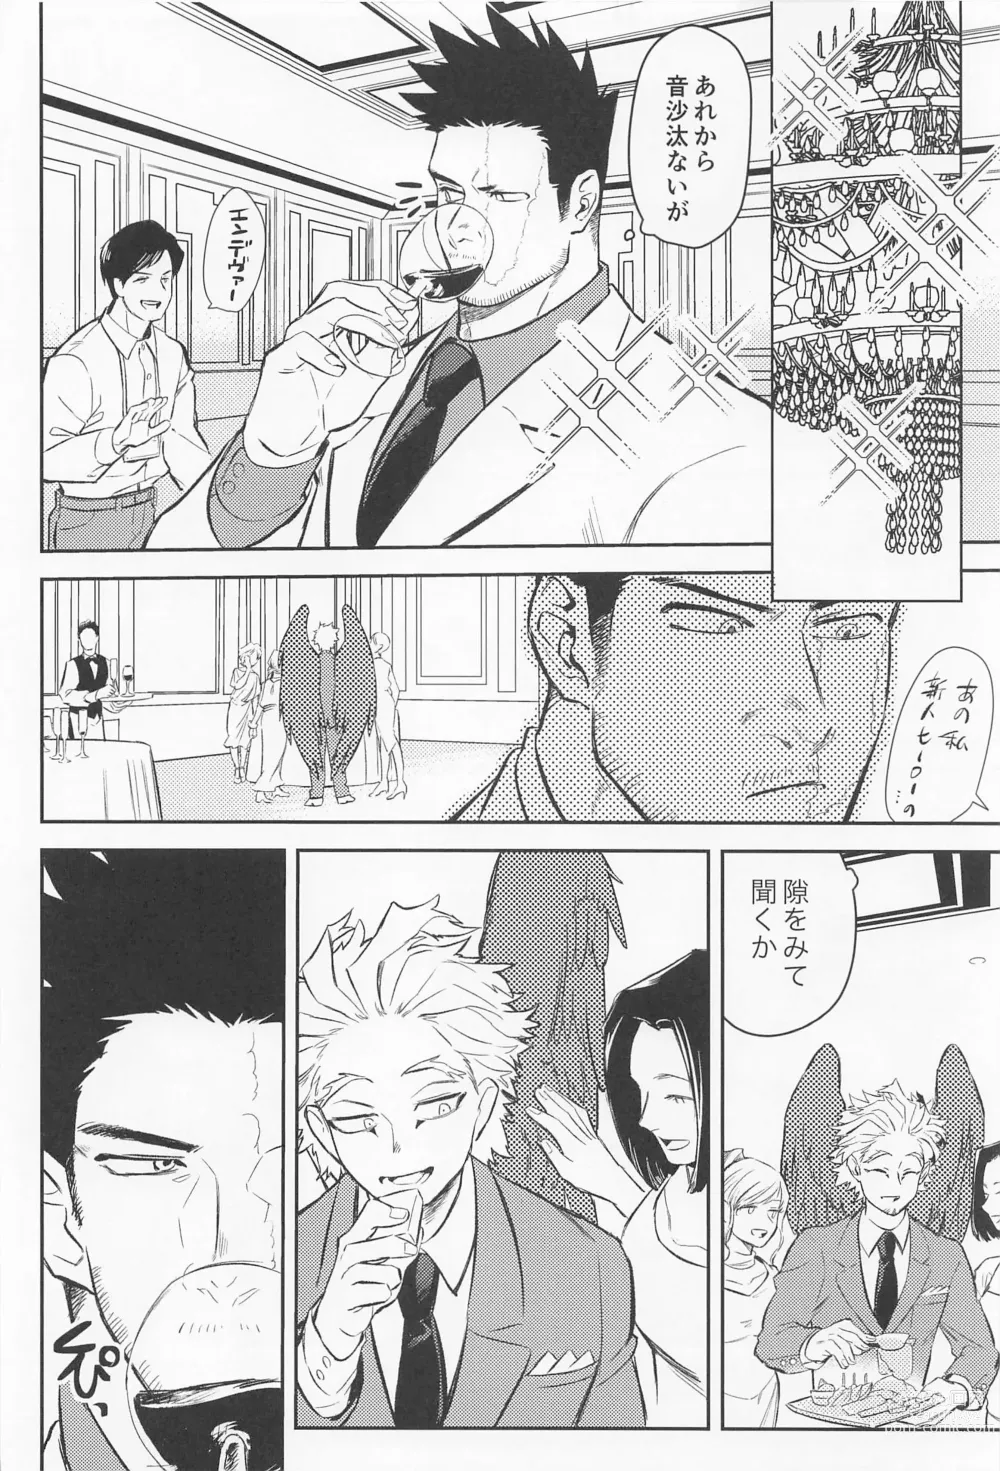 Page 5 of doujinshi Soredemo Aishitai